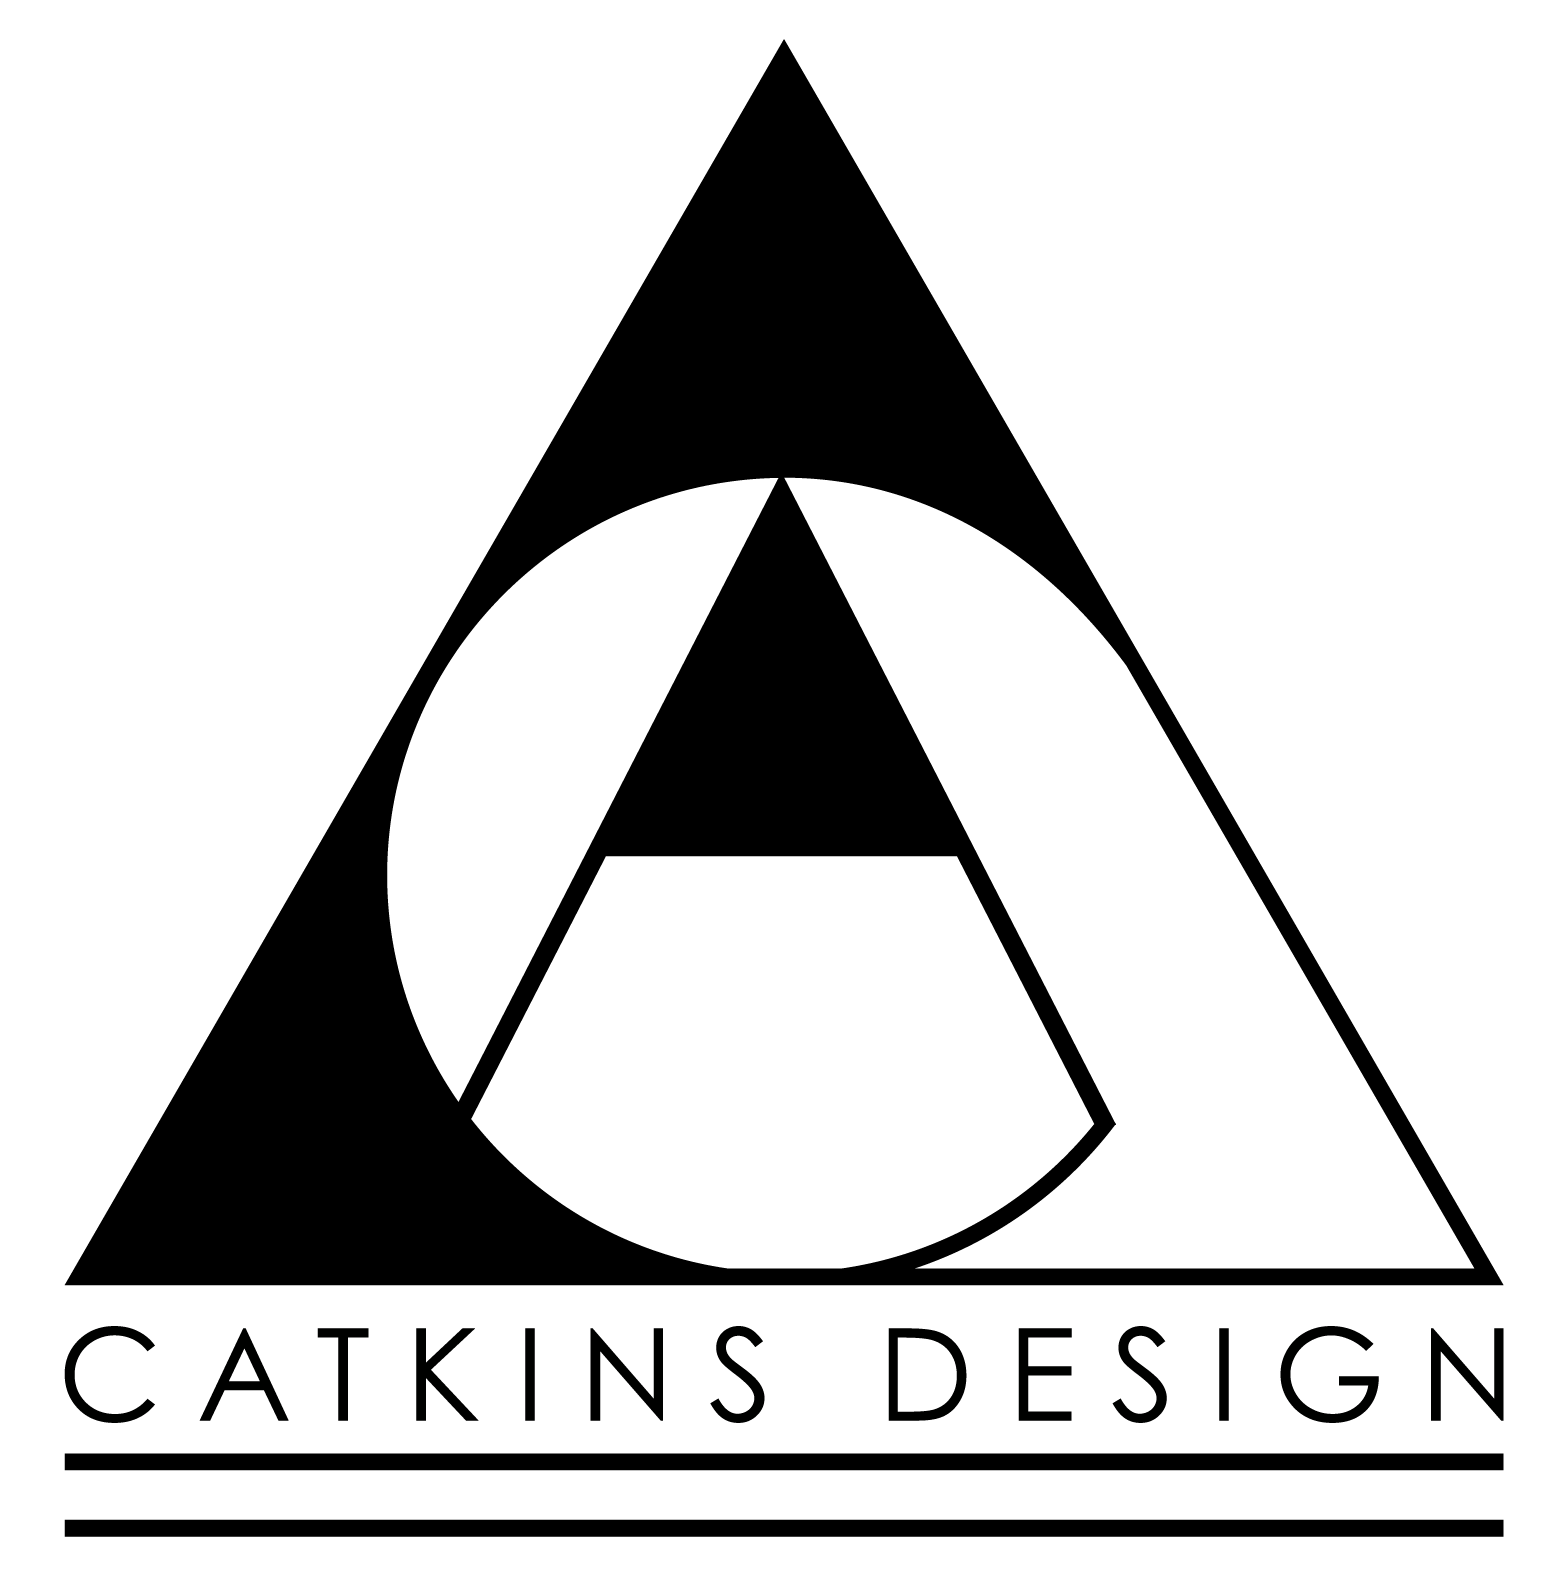 CATKINS DESIGN